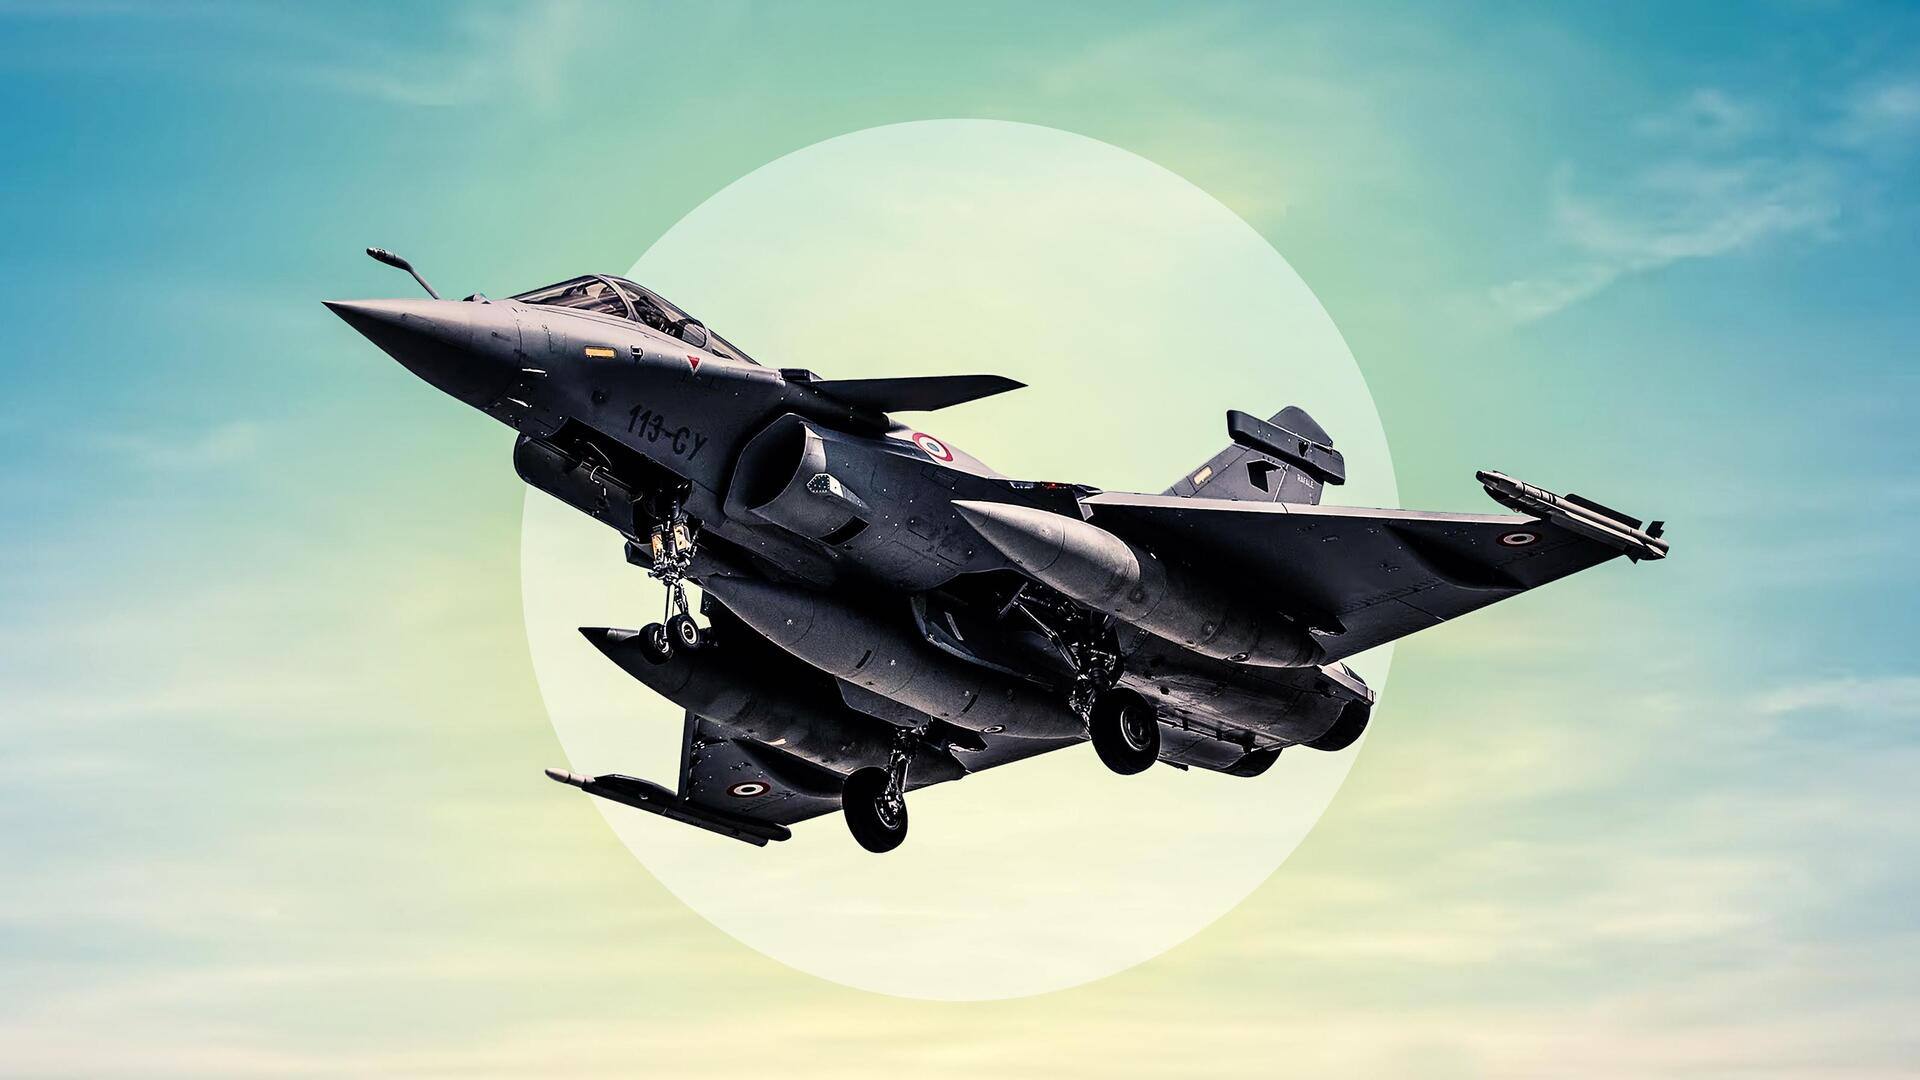 फ्रांस से राफेल लड़ाकू विमान और पनडुब्बी खरीदने के प्रस्ताव को शीर्ष परिषद से मंजूरी मिली